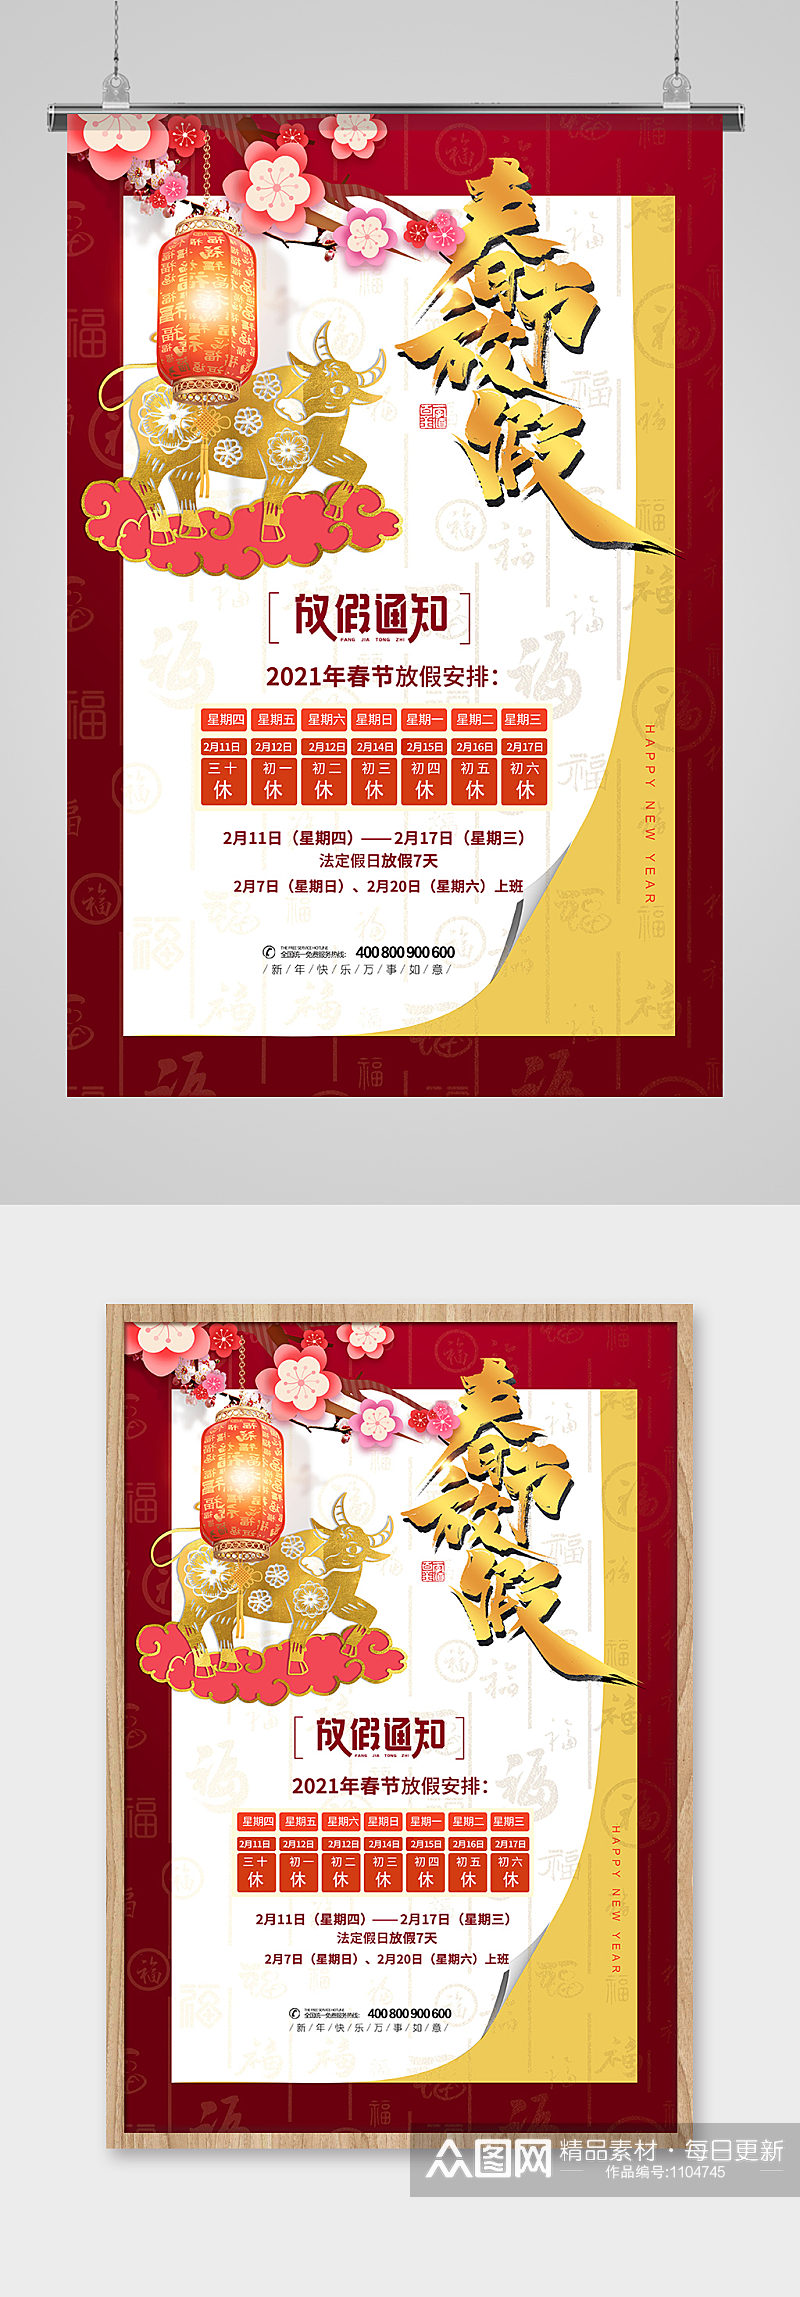 红色喜庆春节放假通知宣传海报素材